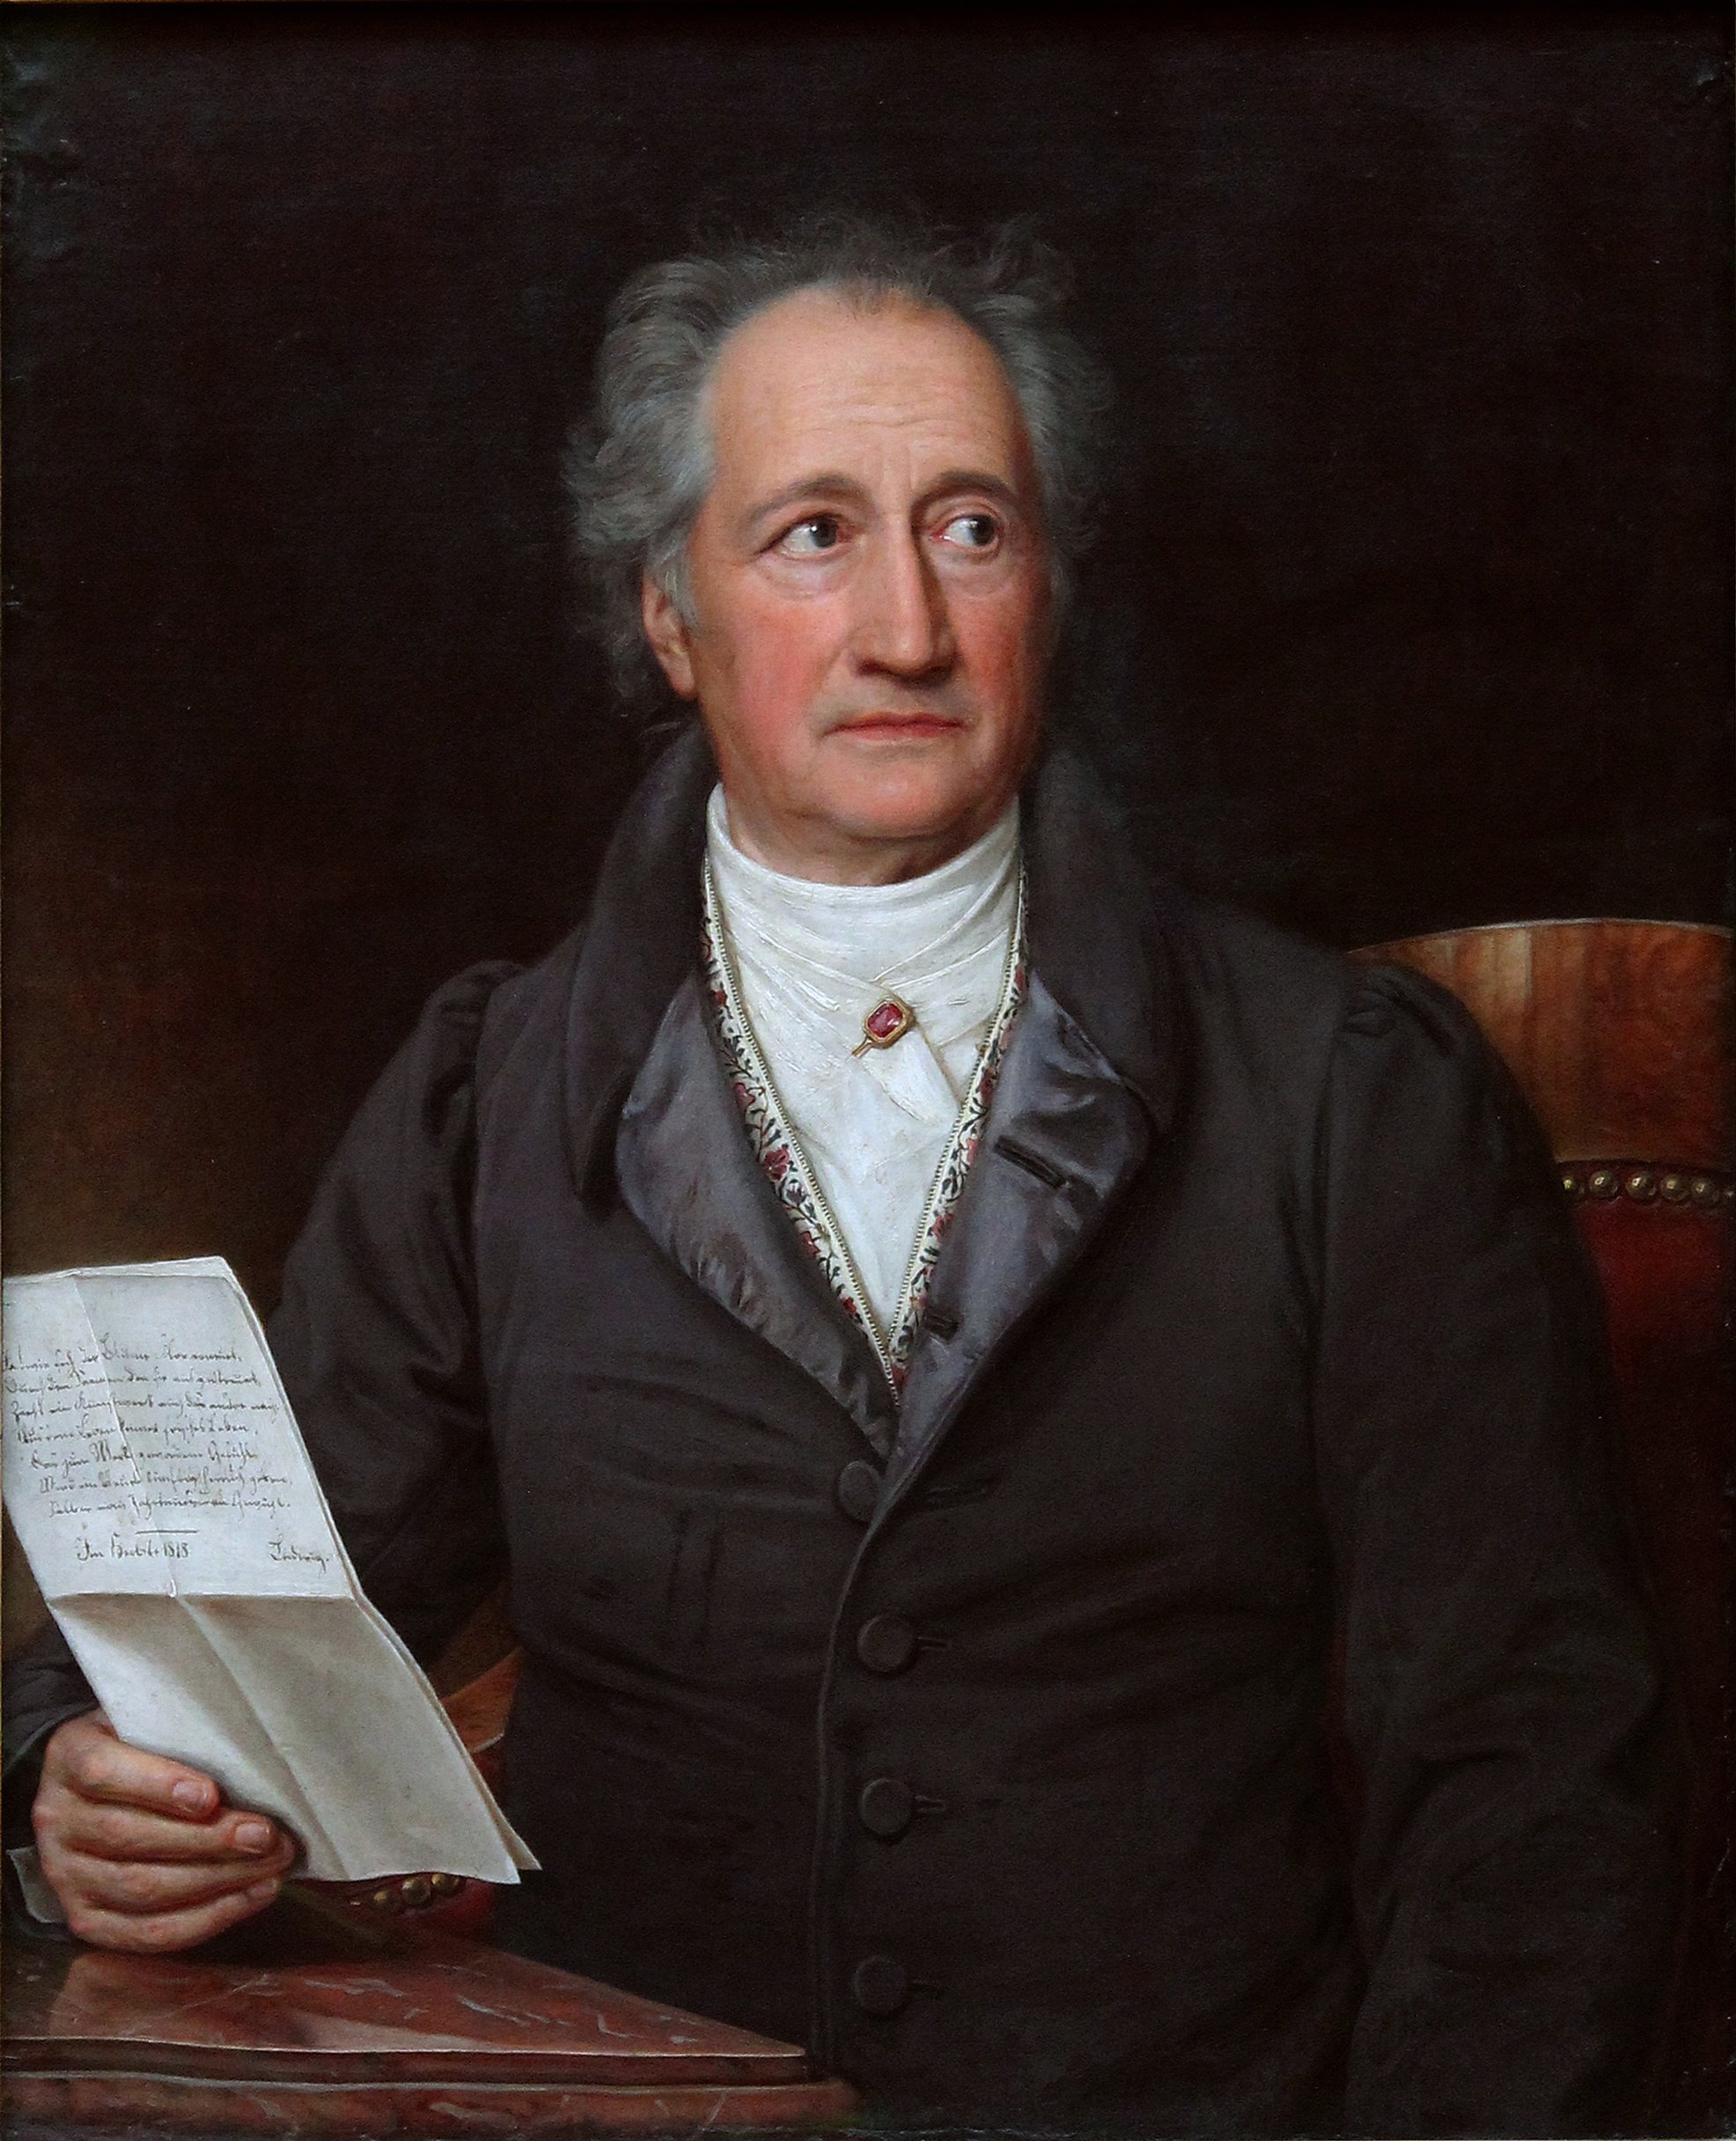 auteur Johann Wolfgang von Goethe de la citation Il n'y a rien de plus effrayant que l'ignorance en action.